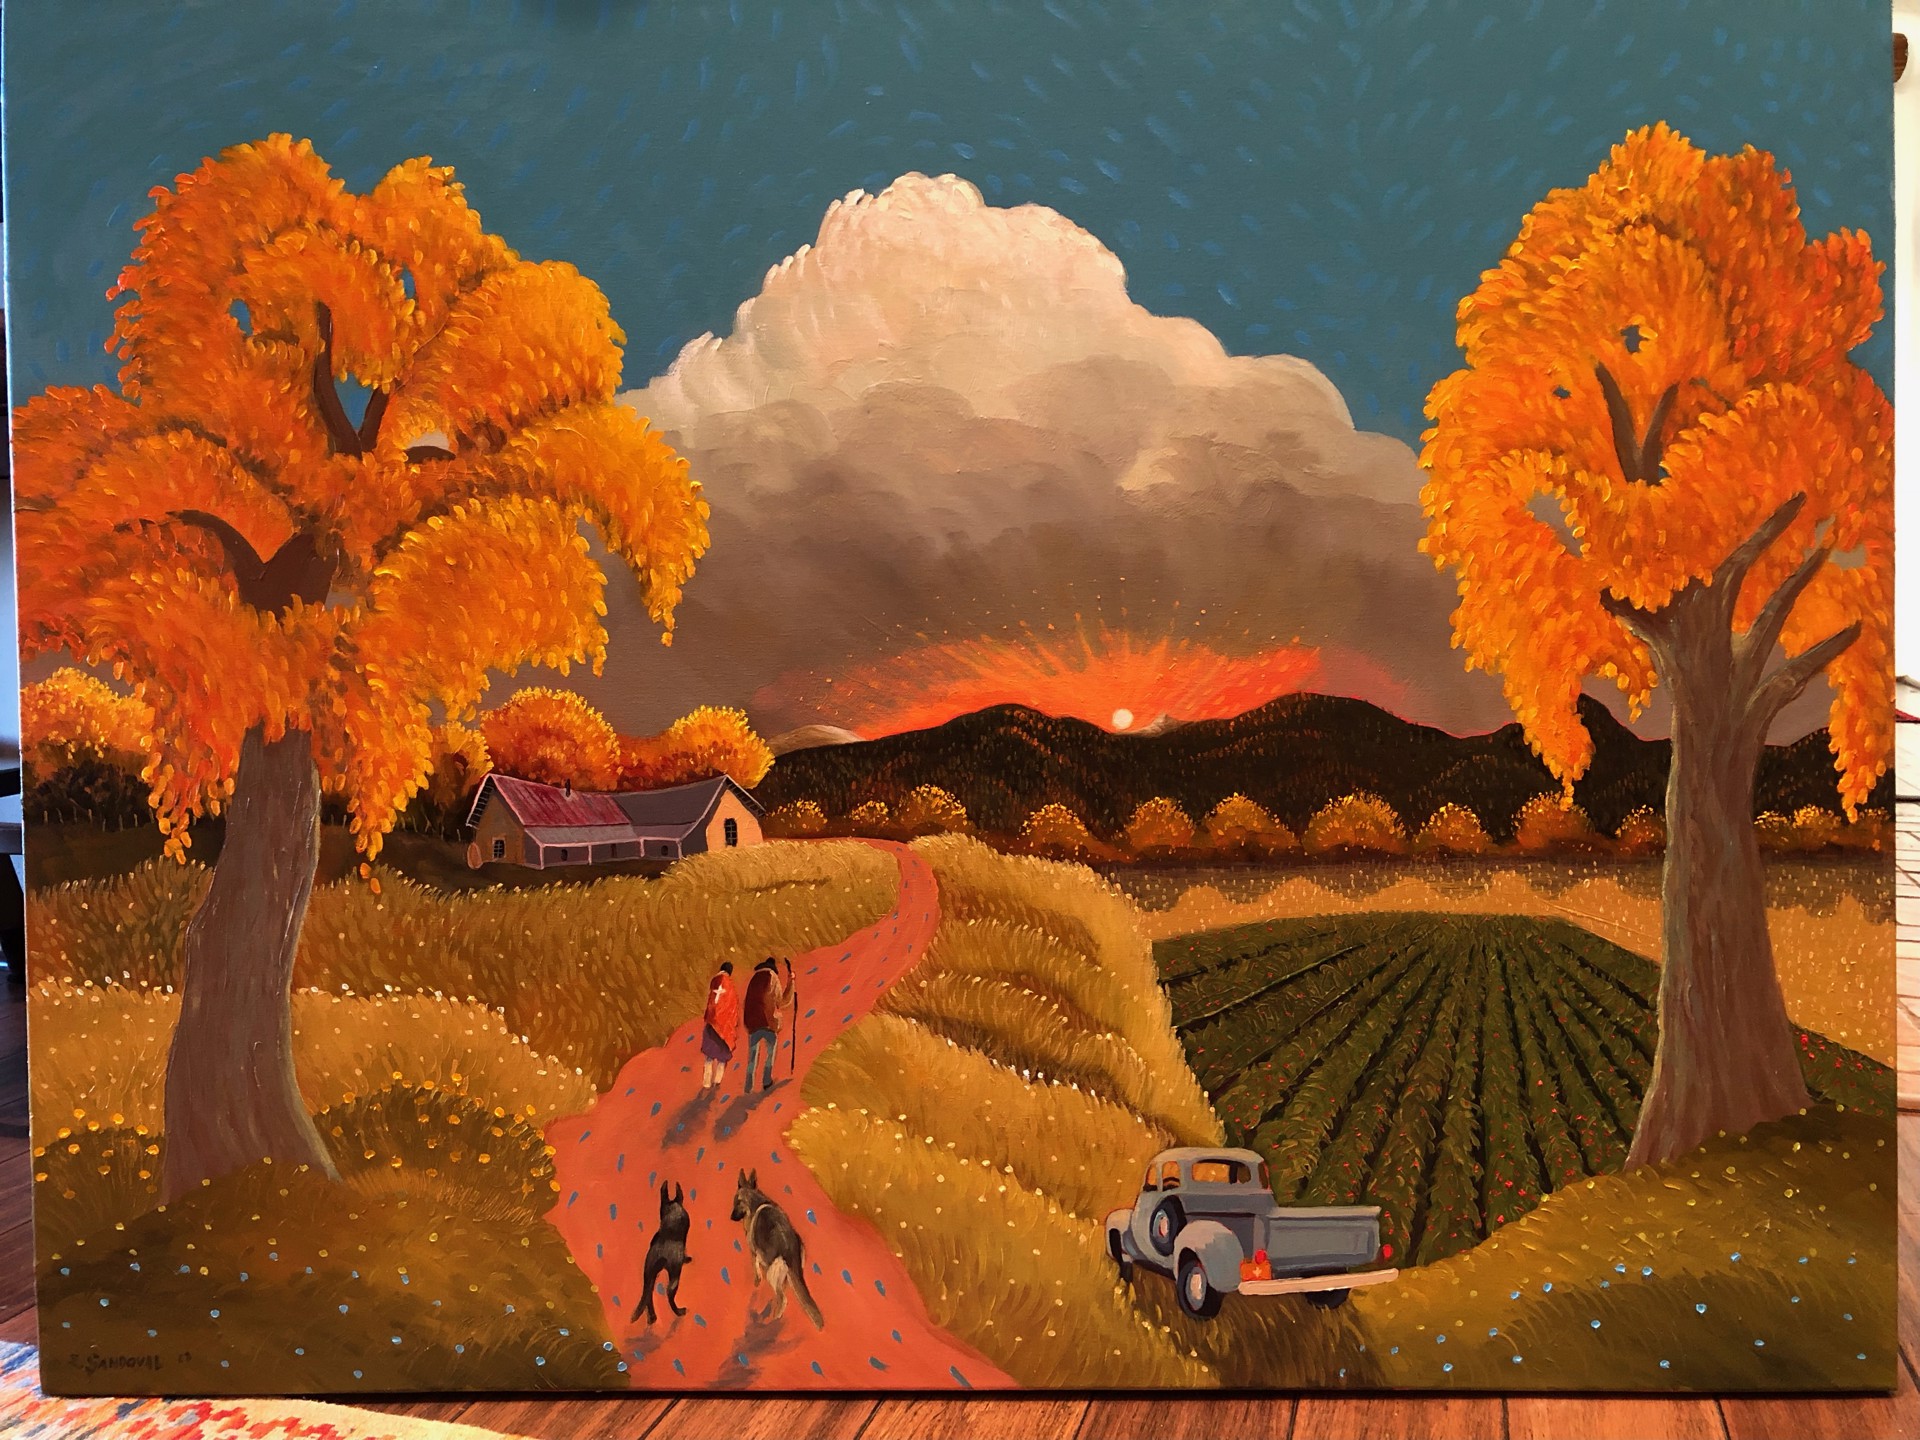 Autumn Homestead by Ed Sandoval